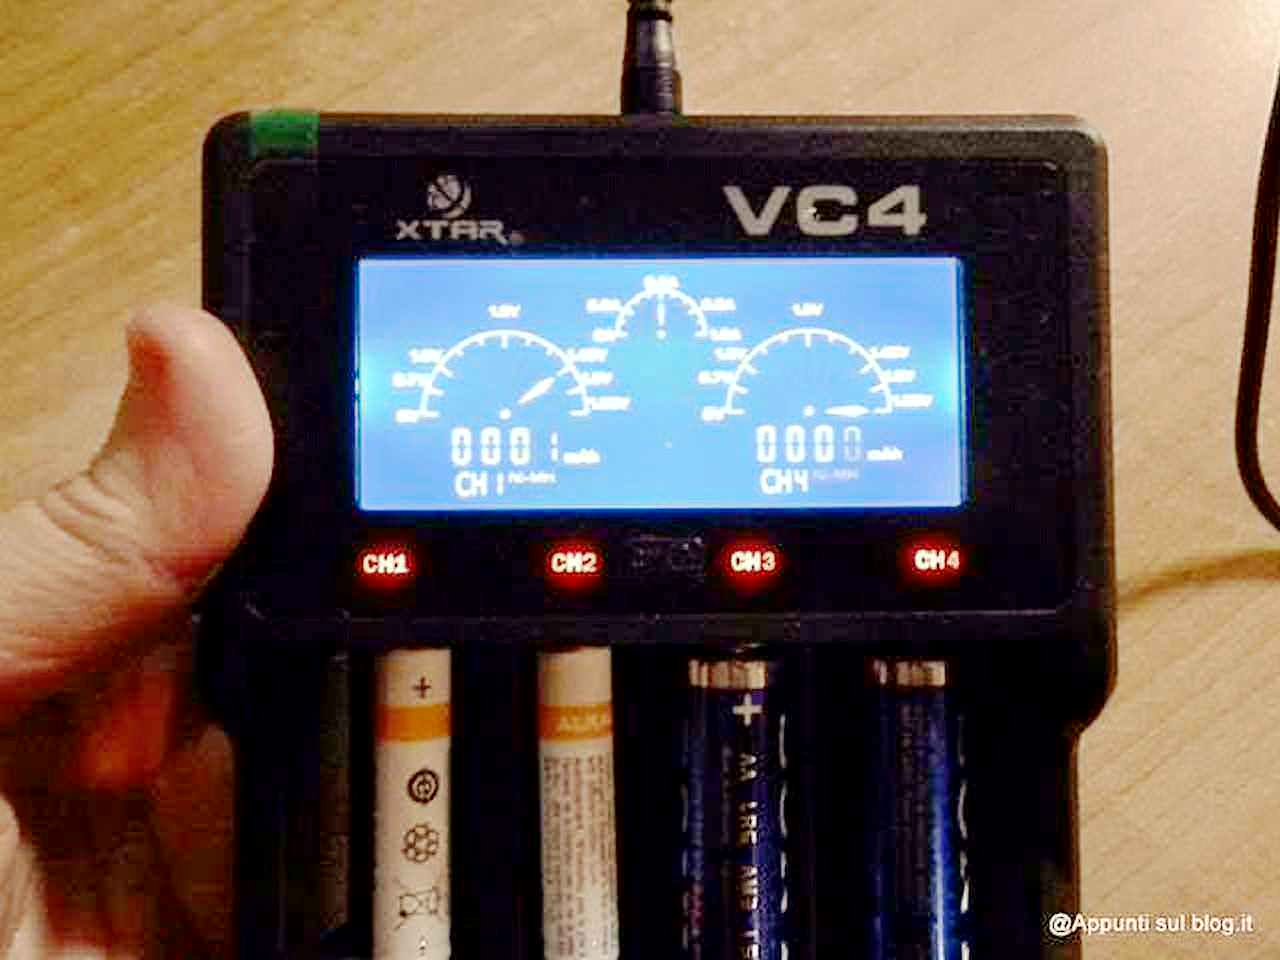 Caricabatteria pile Xtar VC4 con funzione "Zero Volt"